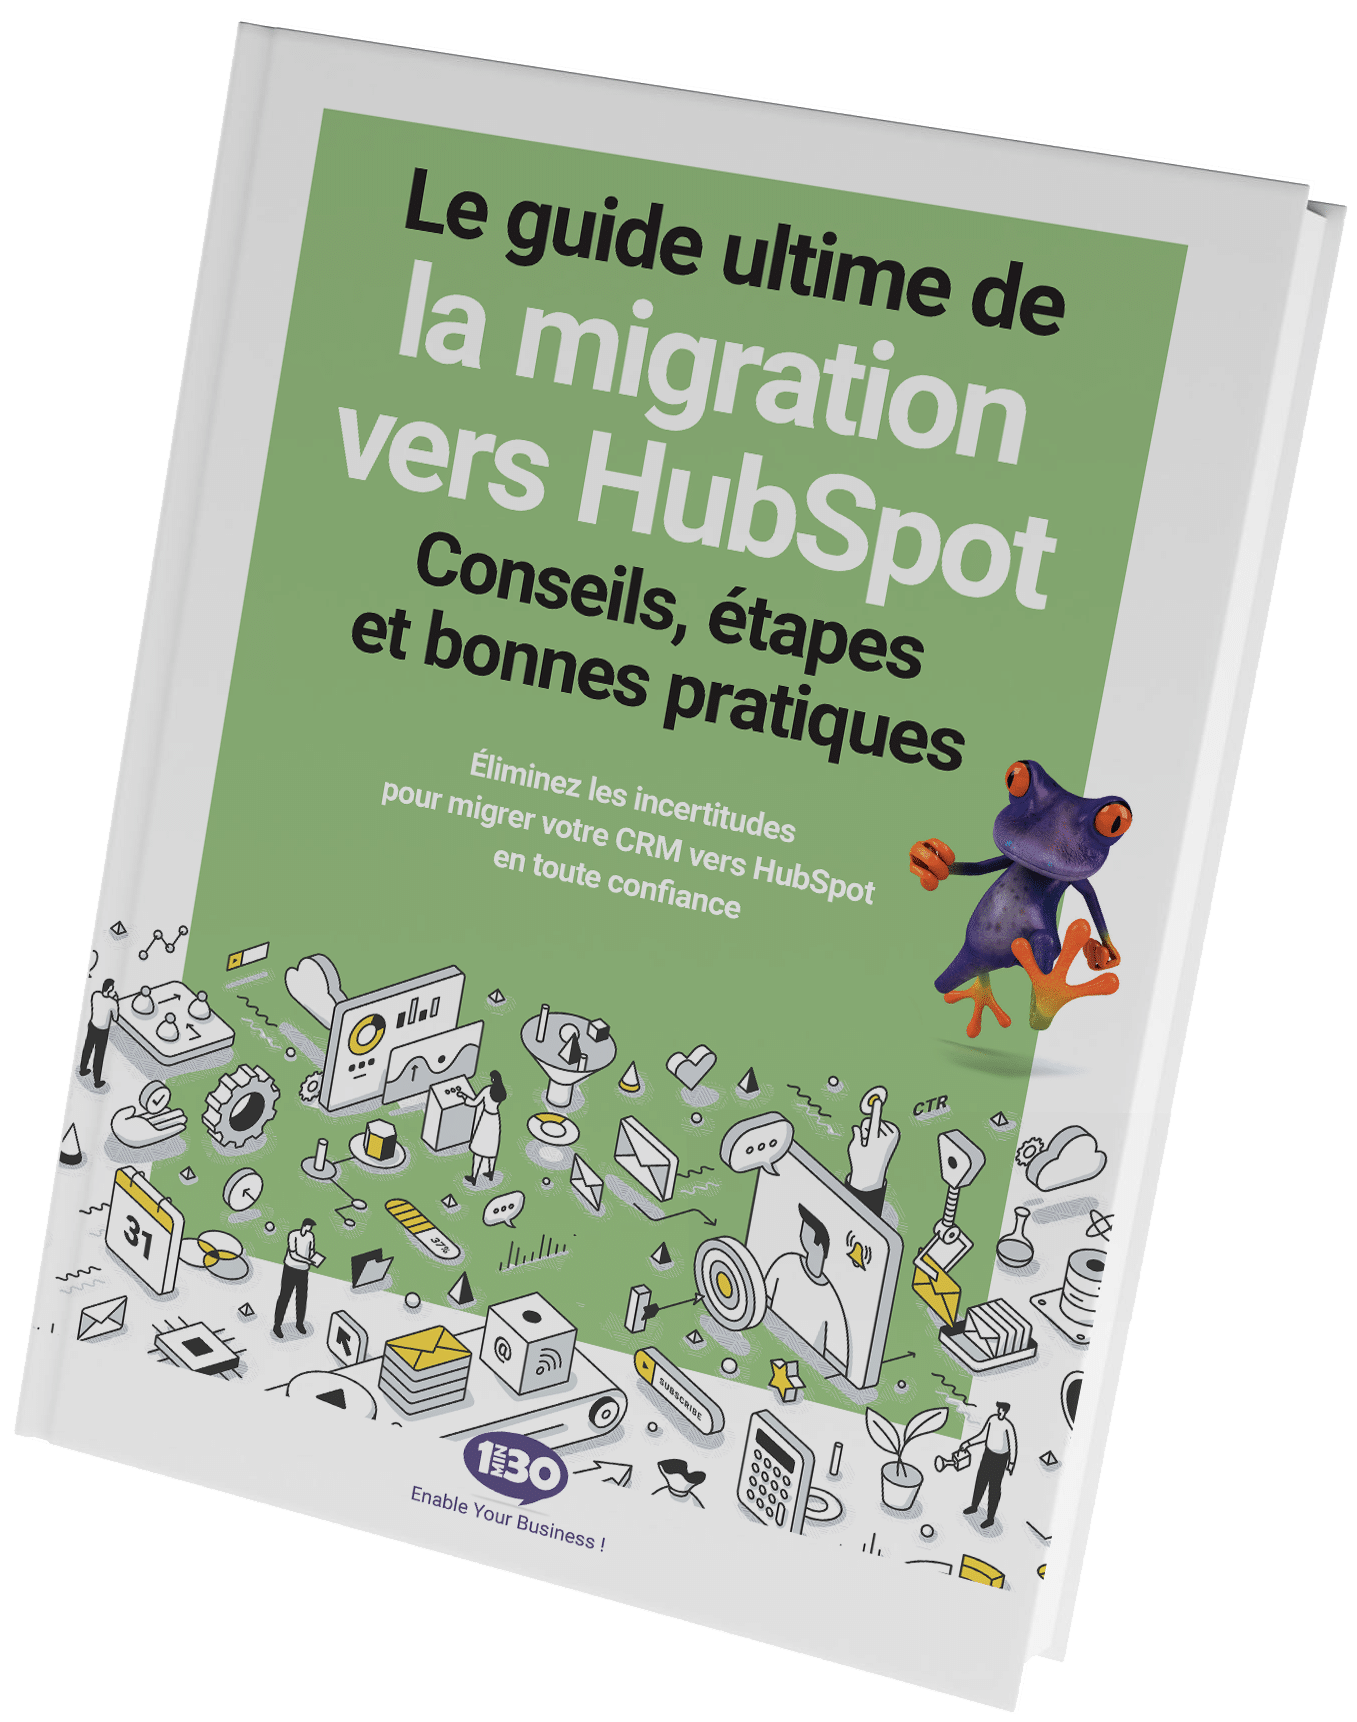 Le guide ultime de la migration vers HubSpot